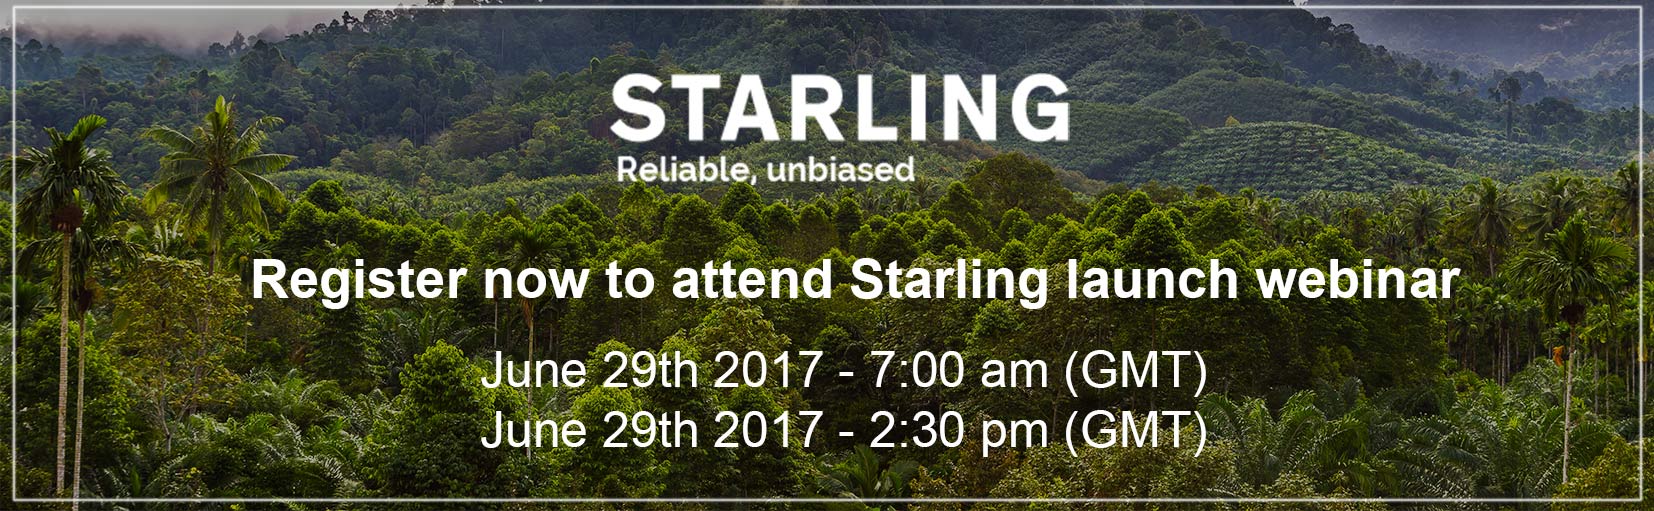 横幅 - 注册Starling网络研讨会